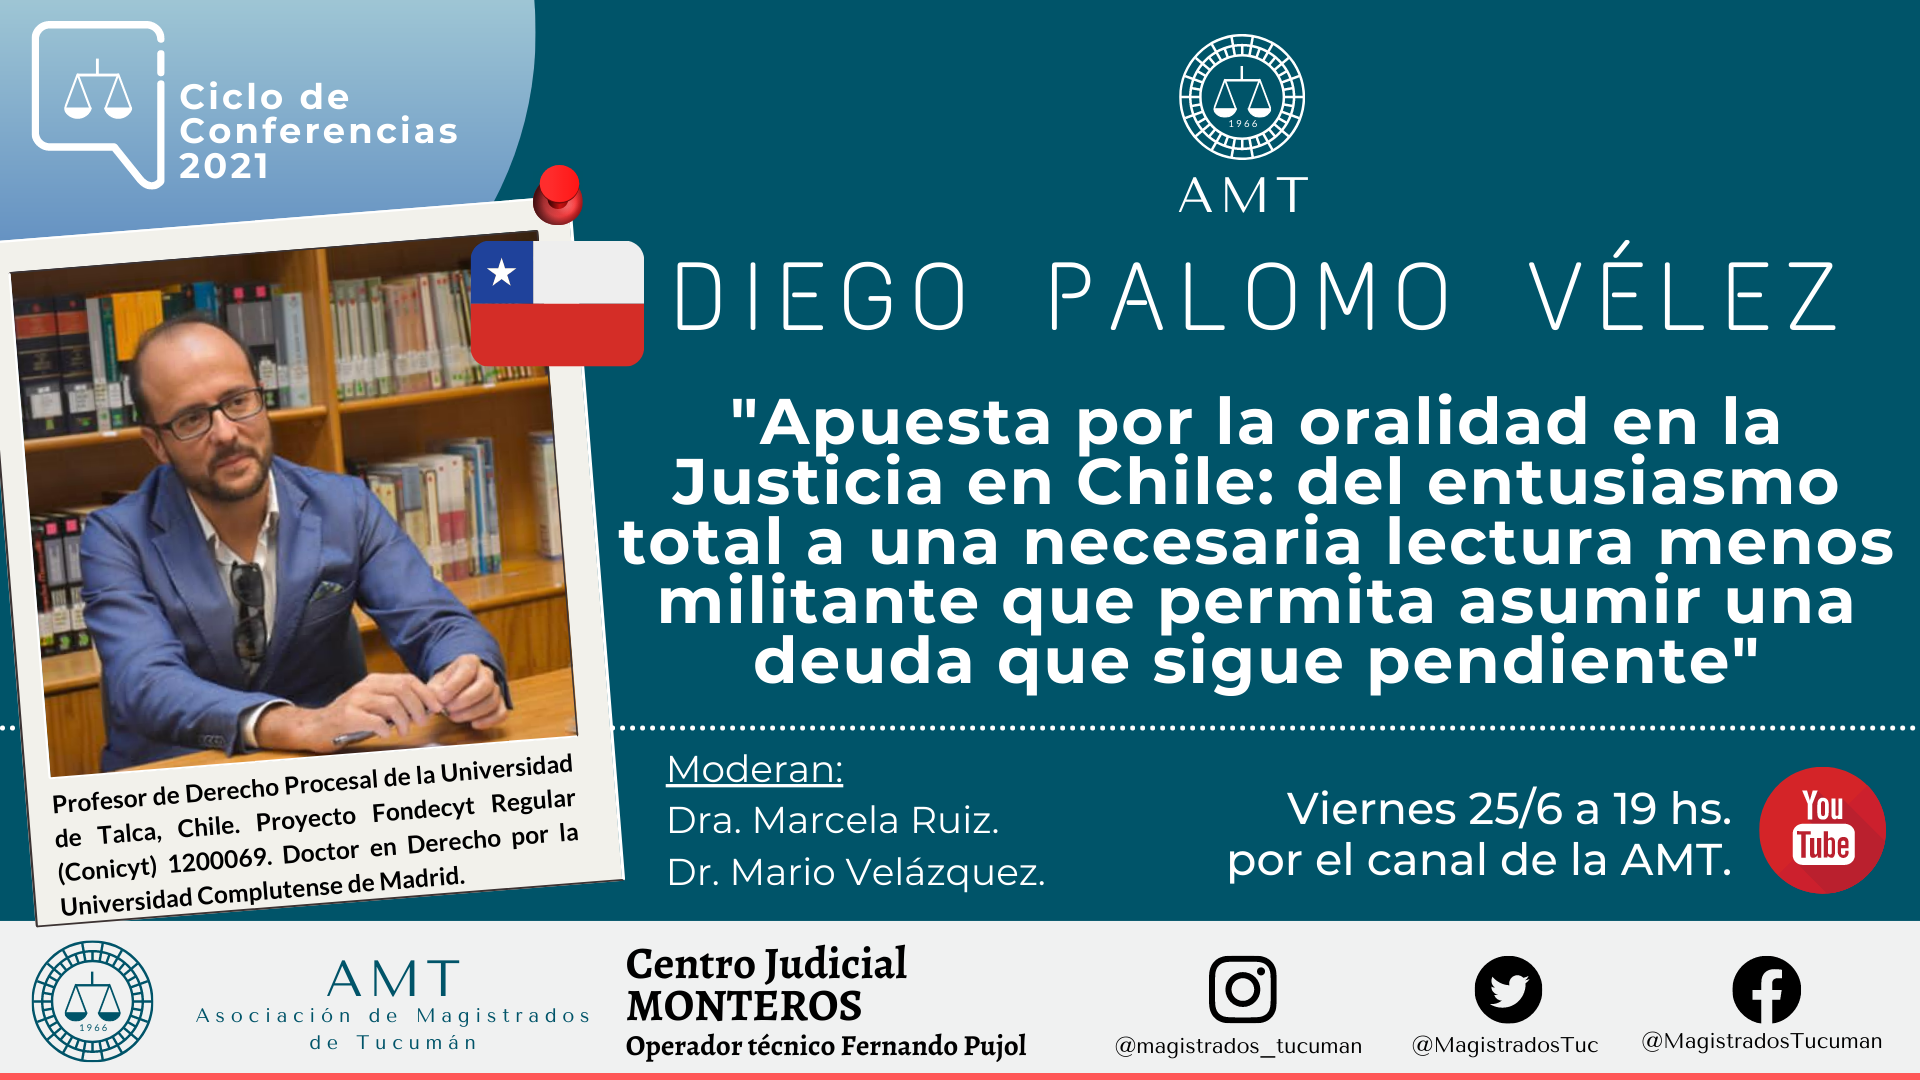 Vuelva a ver la conferencia de Diego Palomo Vélez «Apuesta por la oralidad en la justicia en Chile»